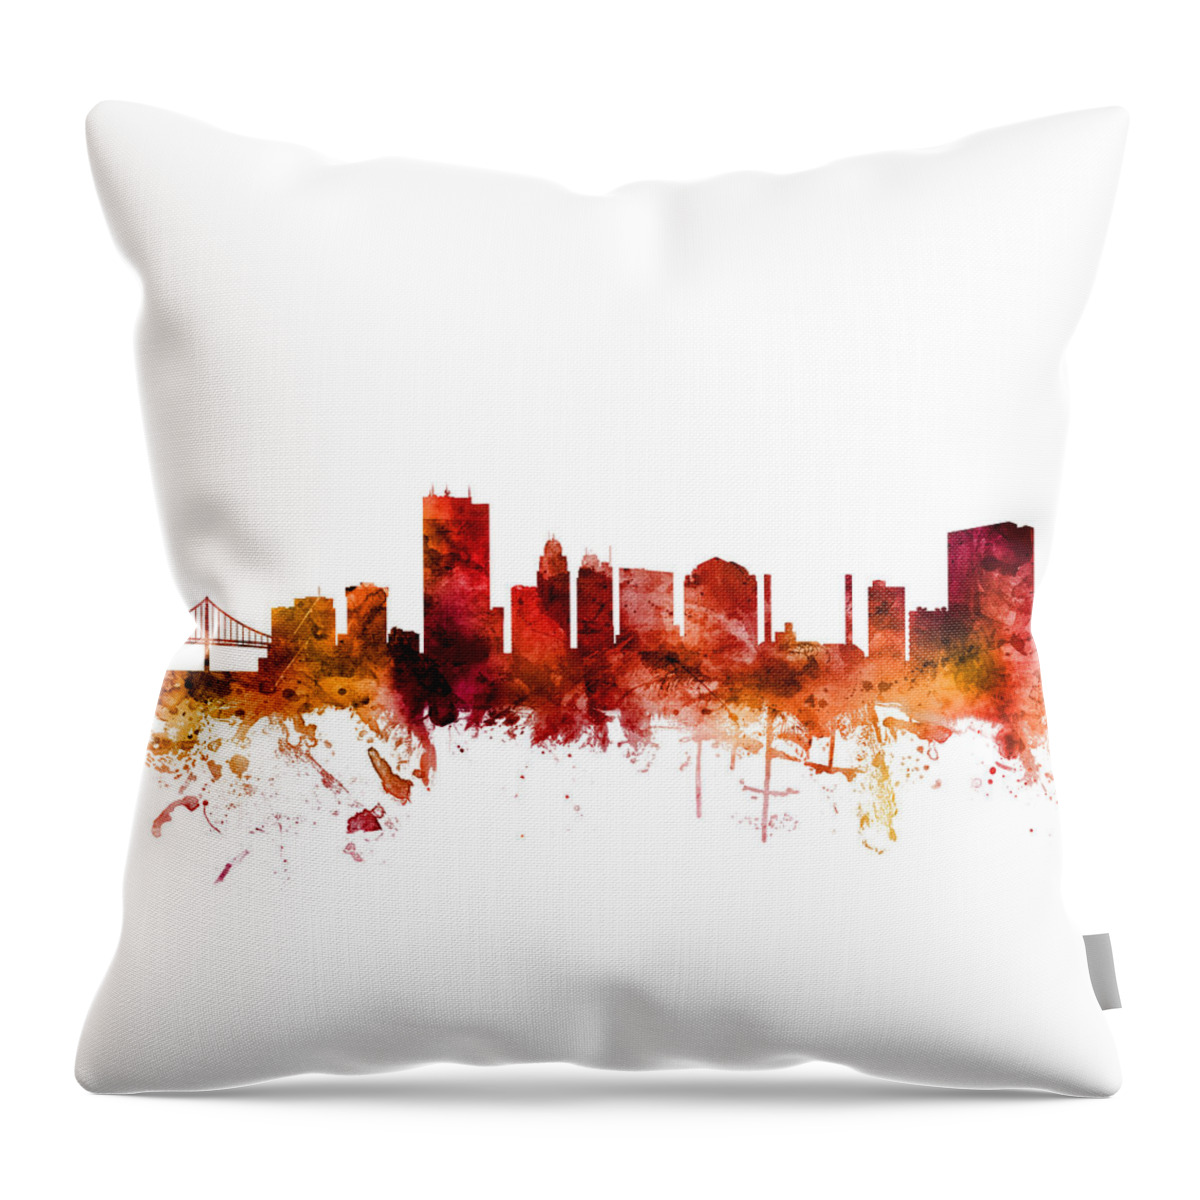 Toledo Throw Pillow featuring the digital art Toledo Ohio Skyline #6 by Michael Tompsett